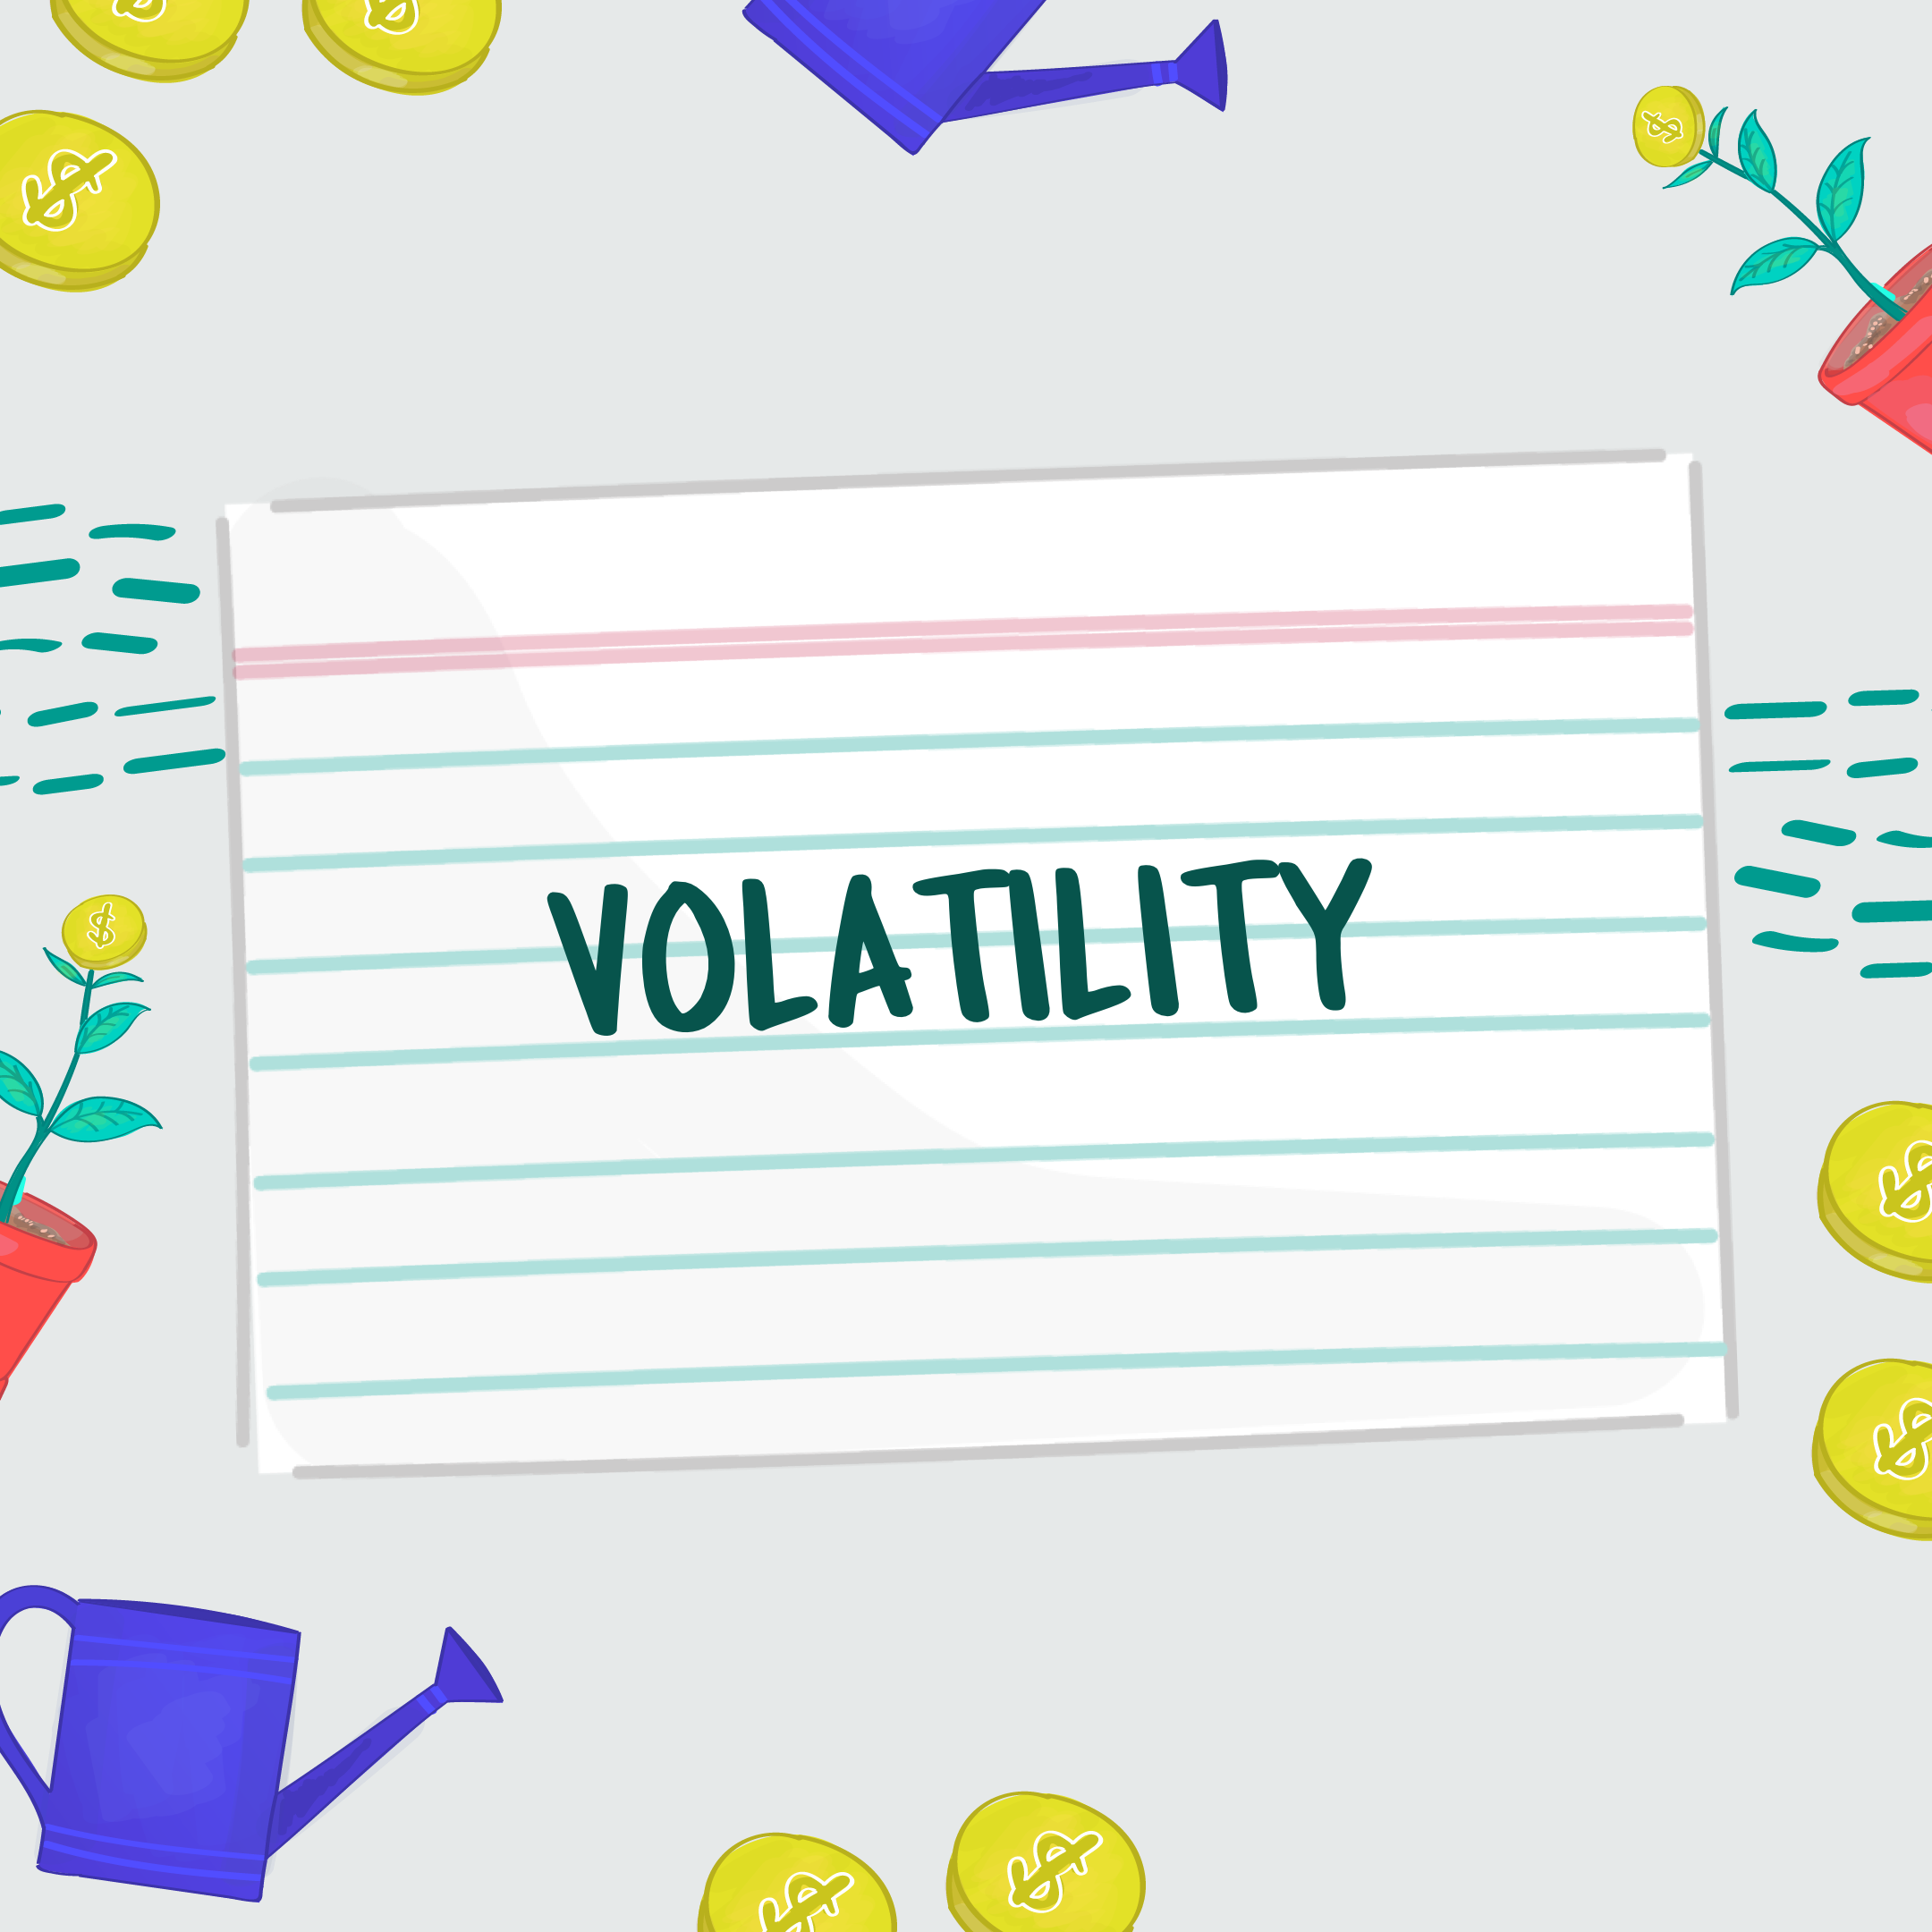 FSL Stock Market Volatility V2